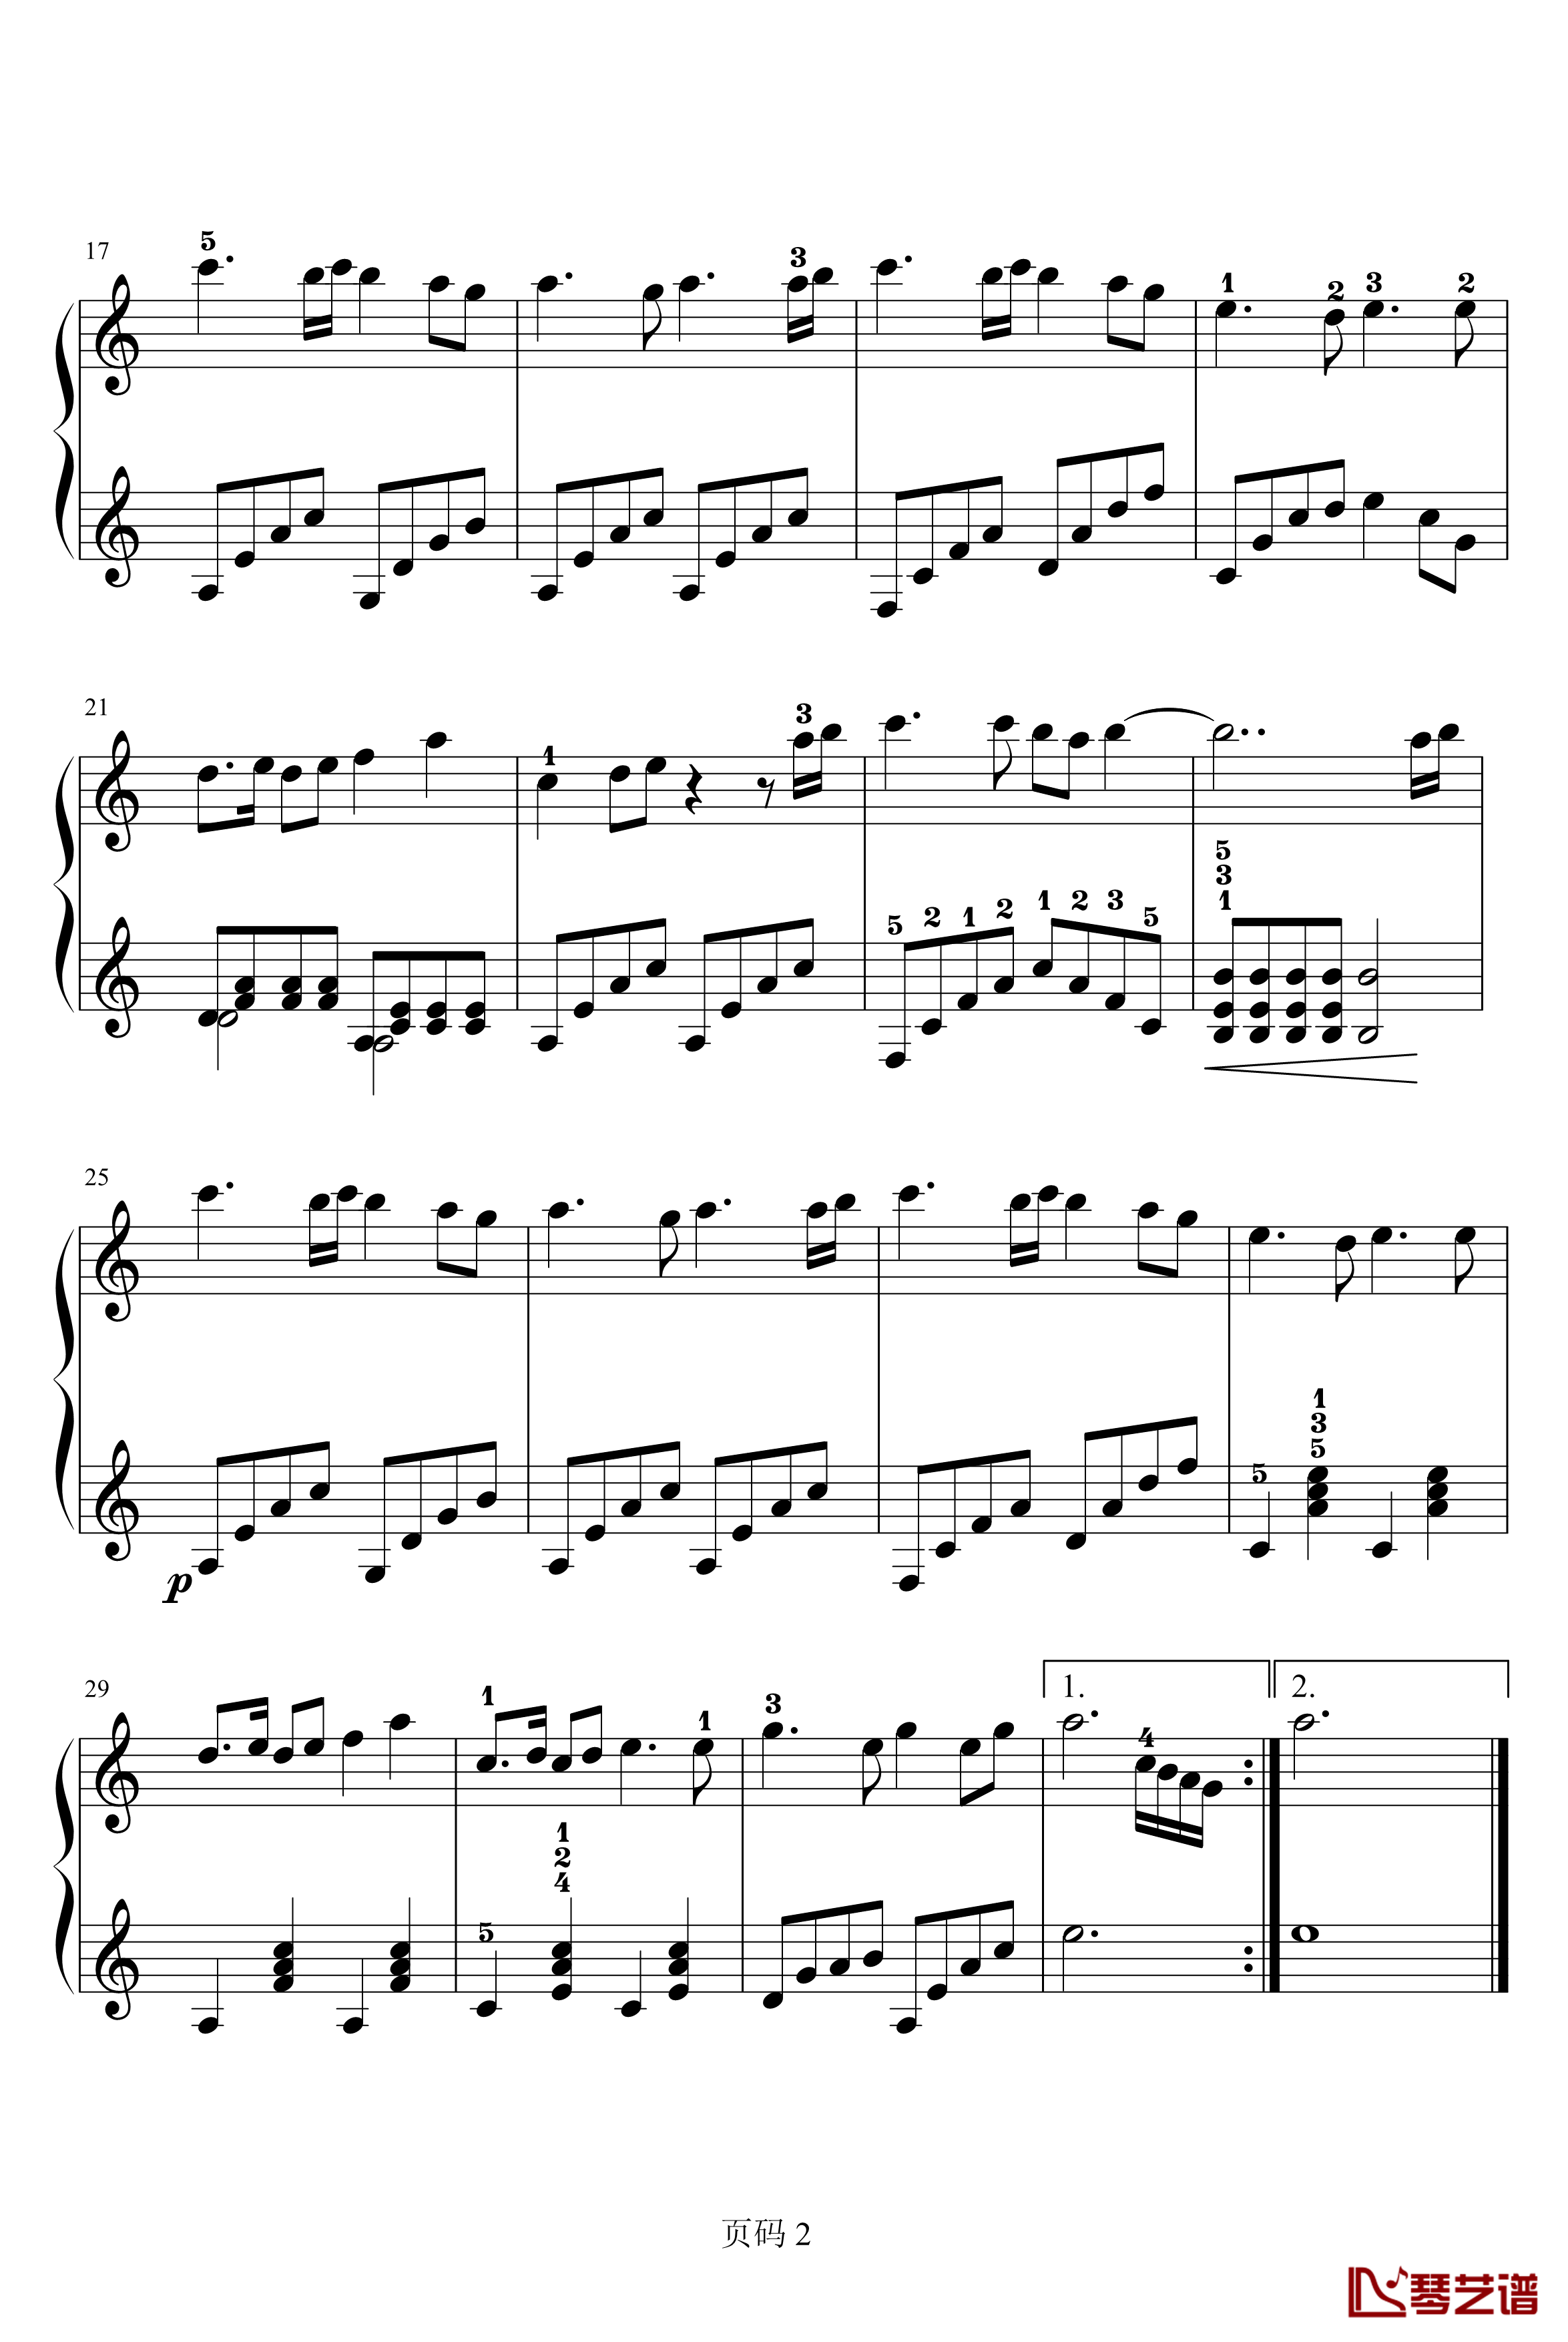 雪花神剑钢琴谱-演奏版-含指法-影视2